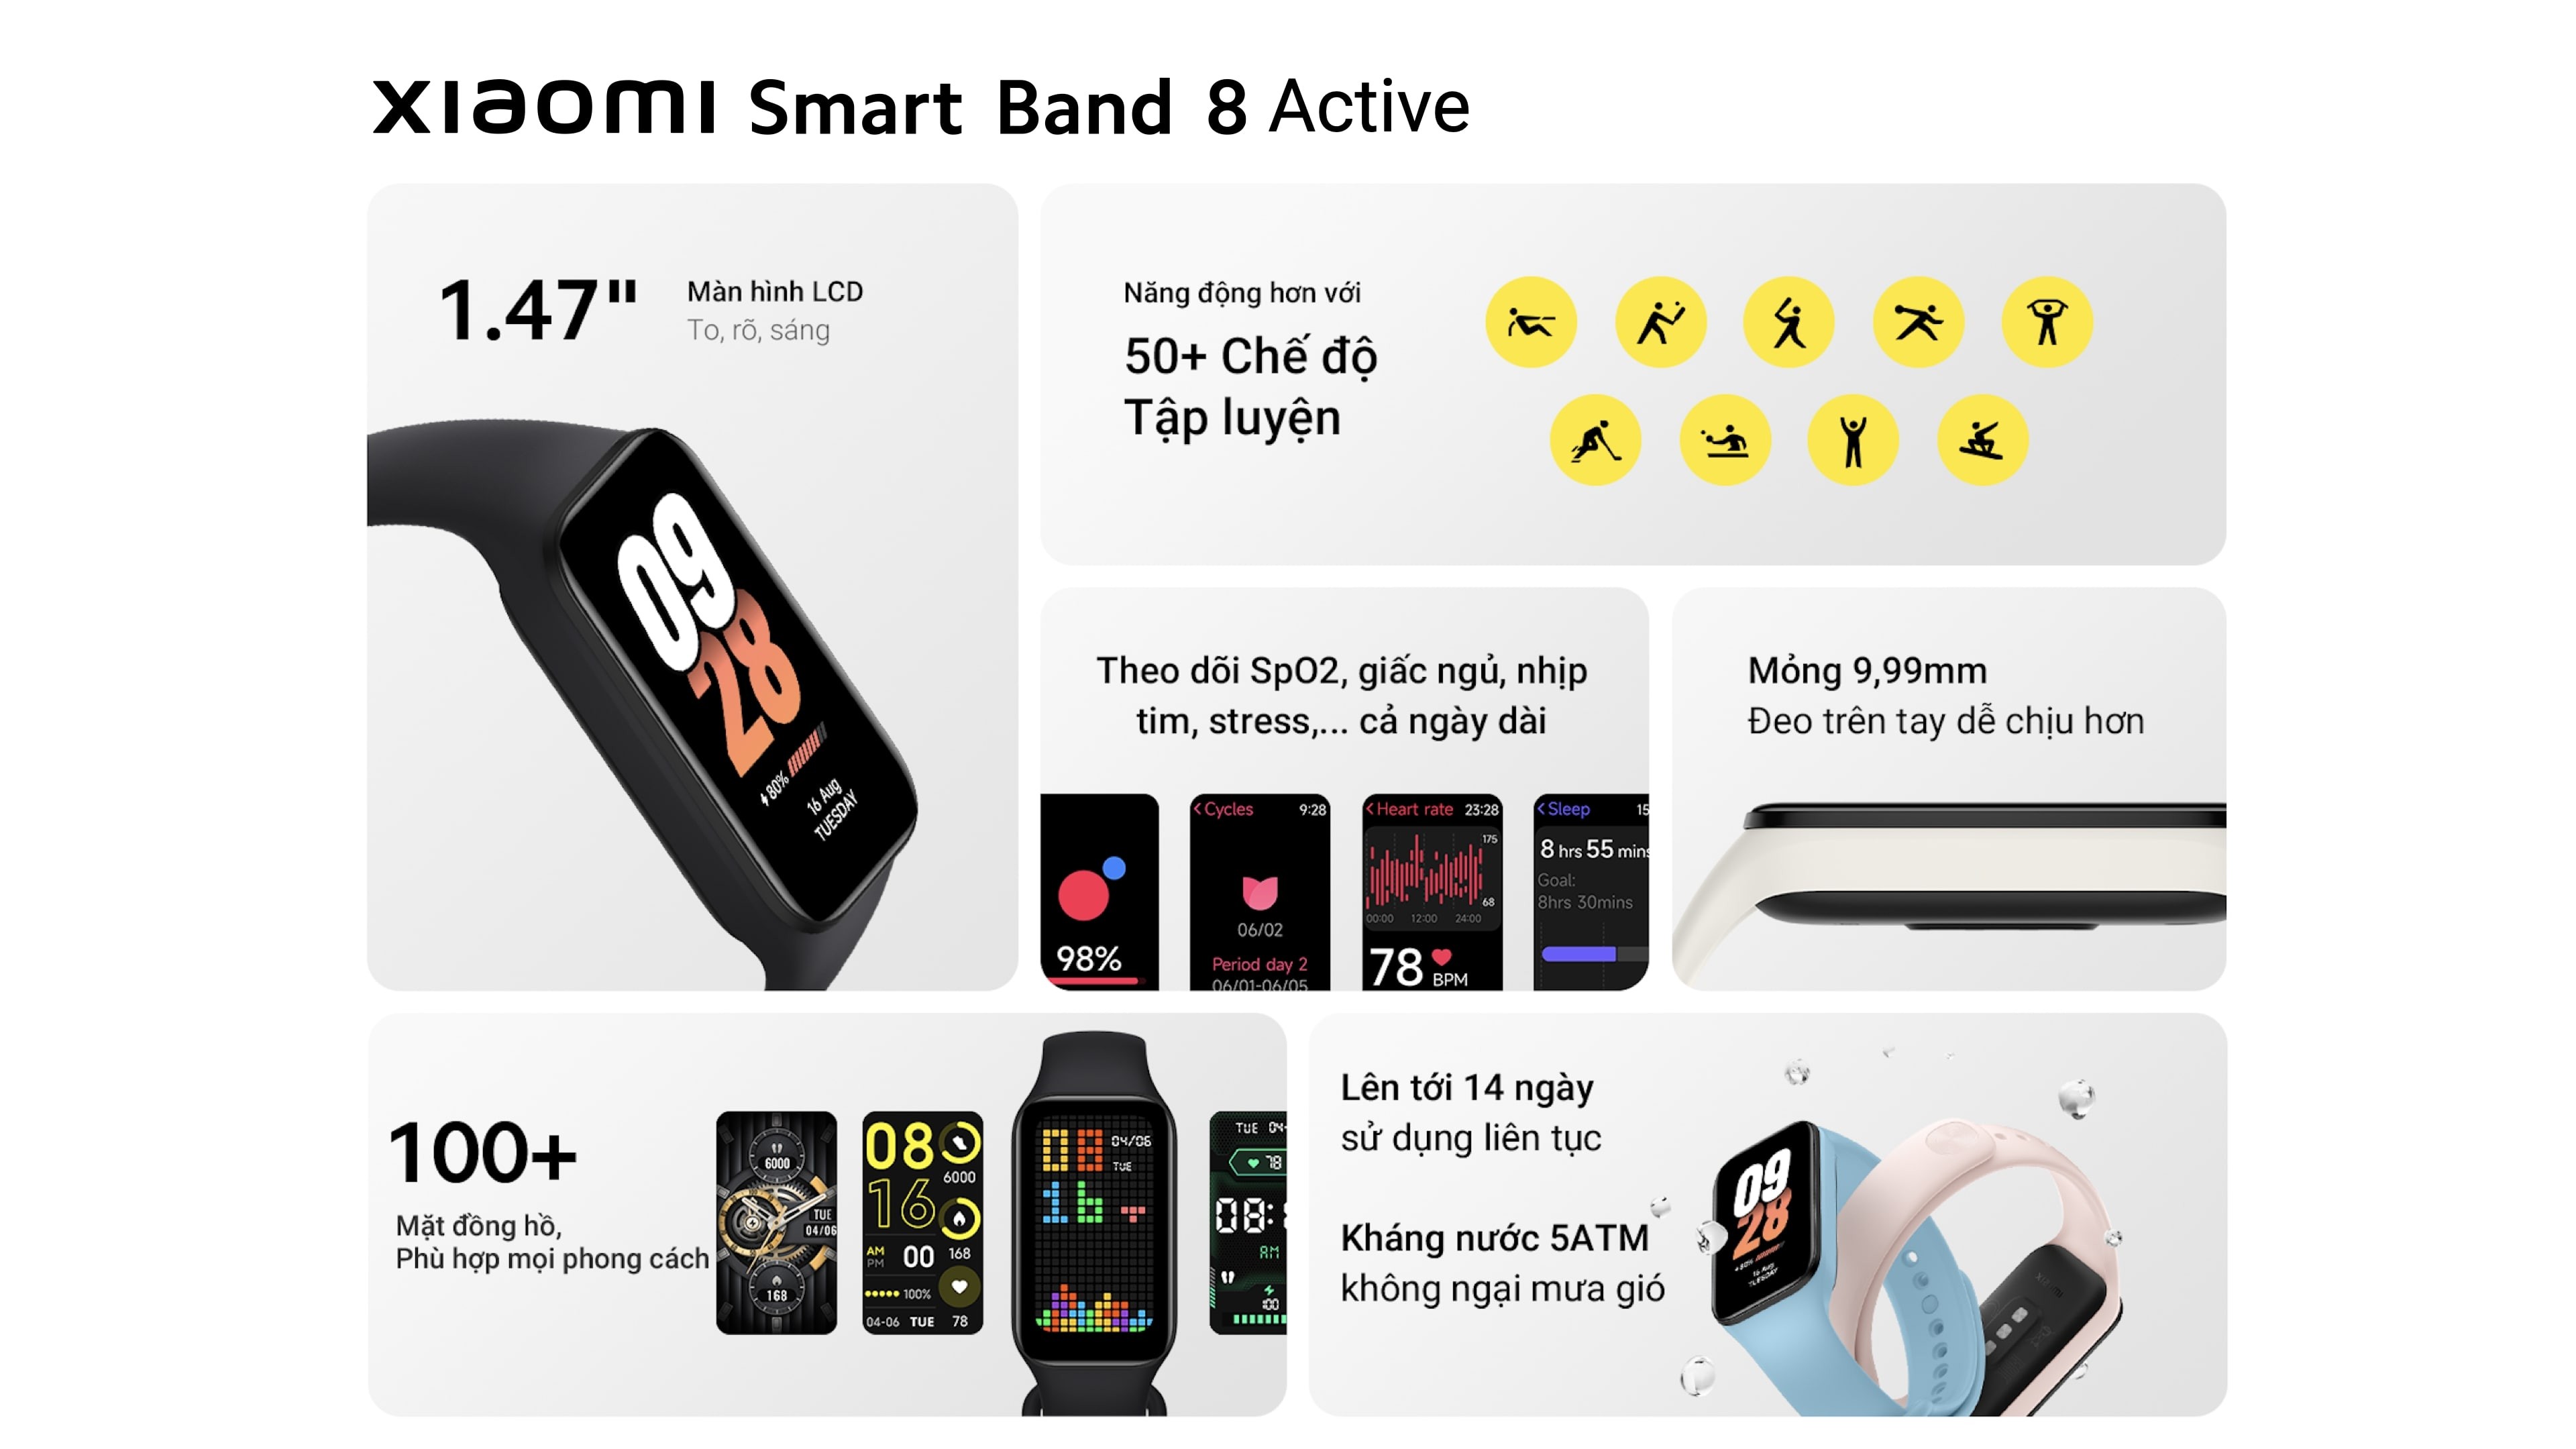 Xiaomi Smart Band 8 Active ra mắt với pin 14 ngày, nhiều tính năng hấp dẫn,  giá chỉ từ 640 ngàn đồng